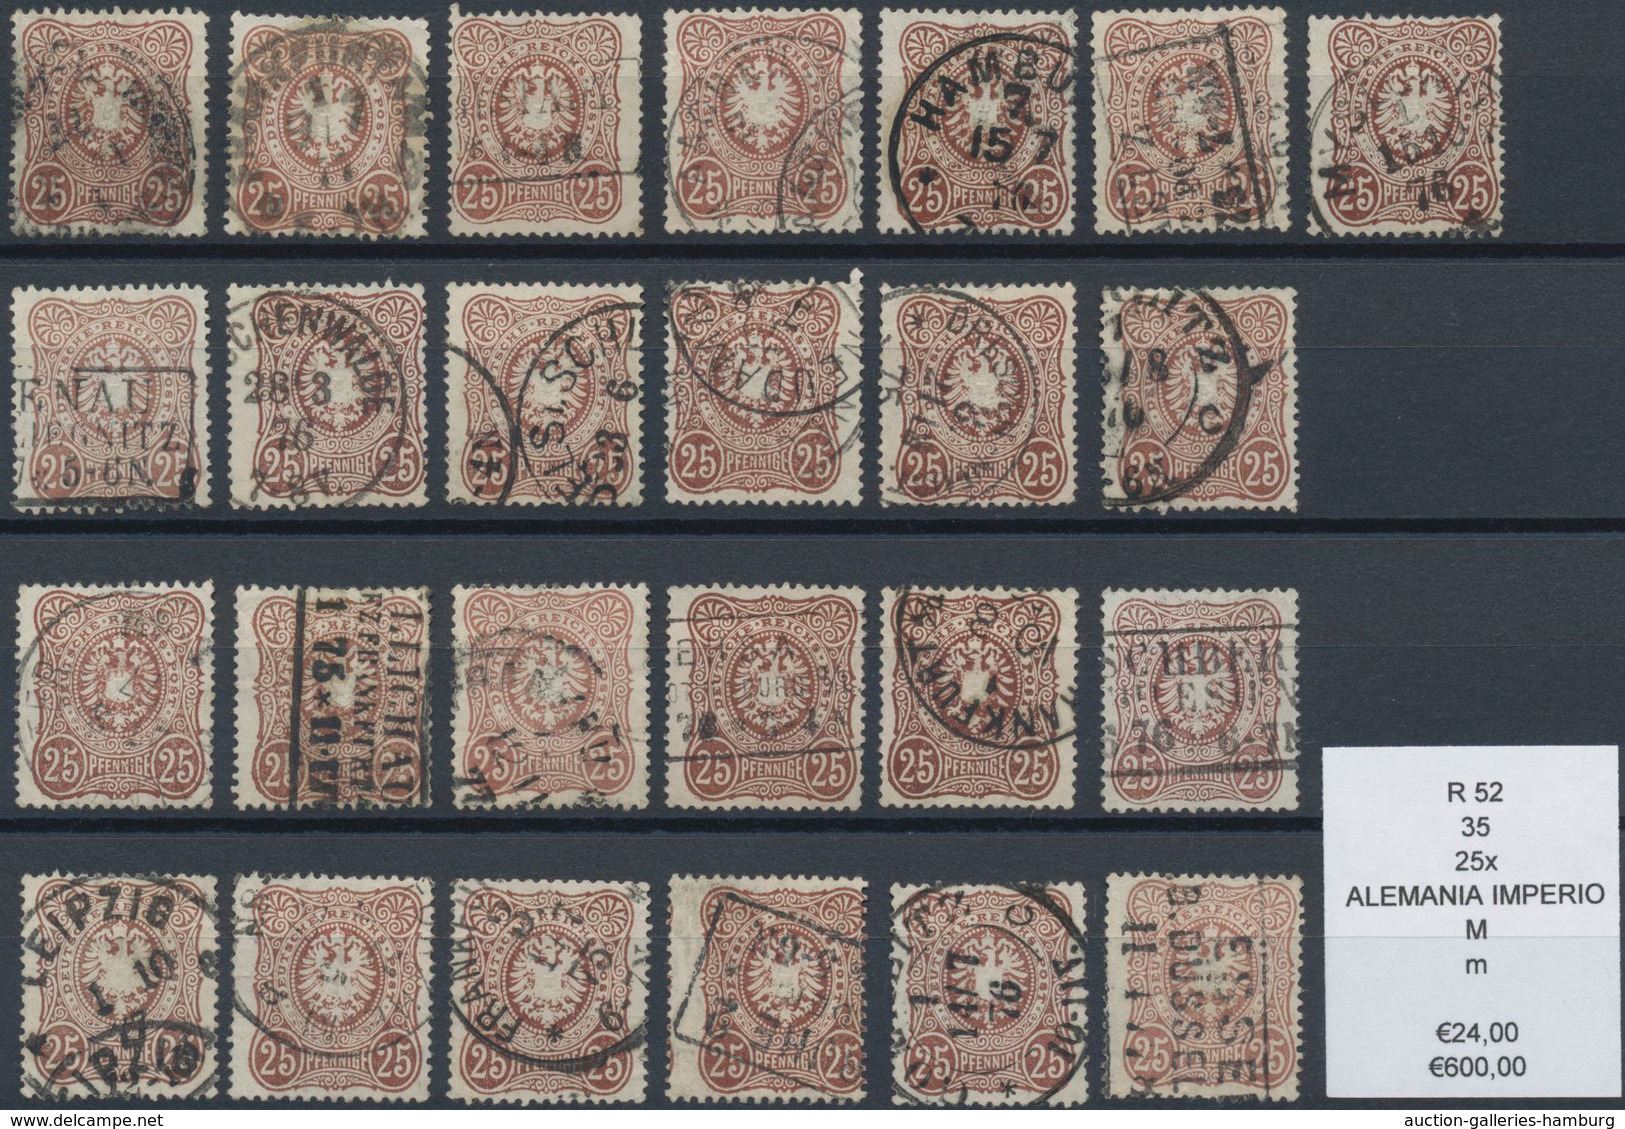 Deutsches Reich - Pfennige: 1875/79, 25 und 50 Pfennige, Engrospartie für den Spezialisten: ca. 89x